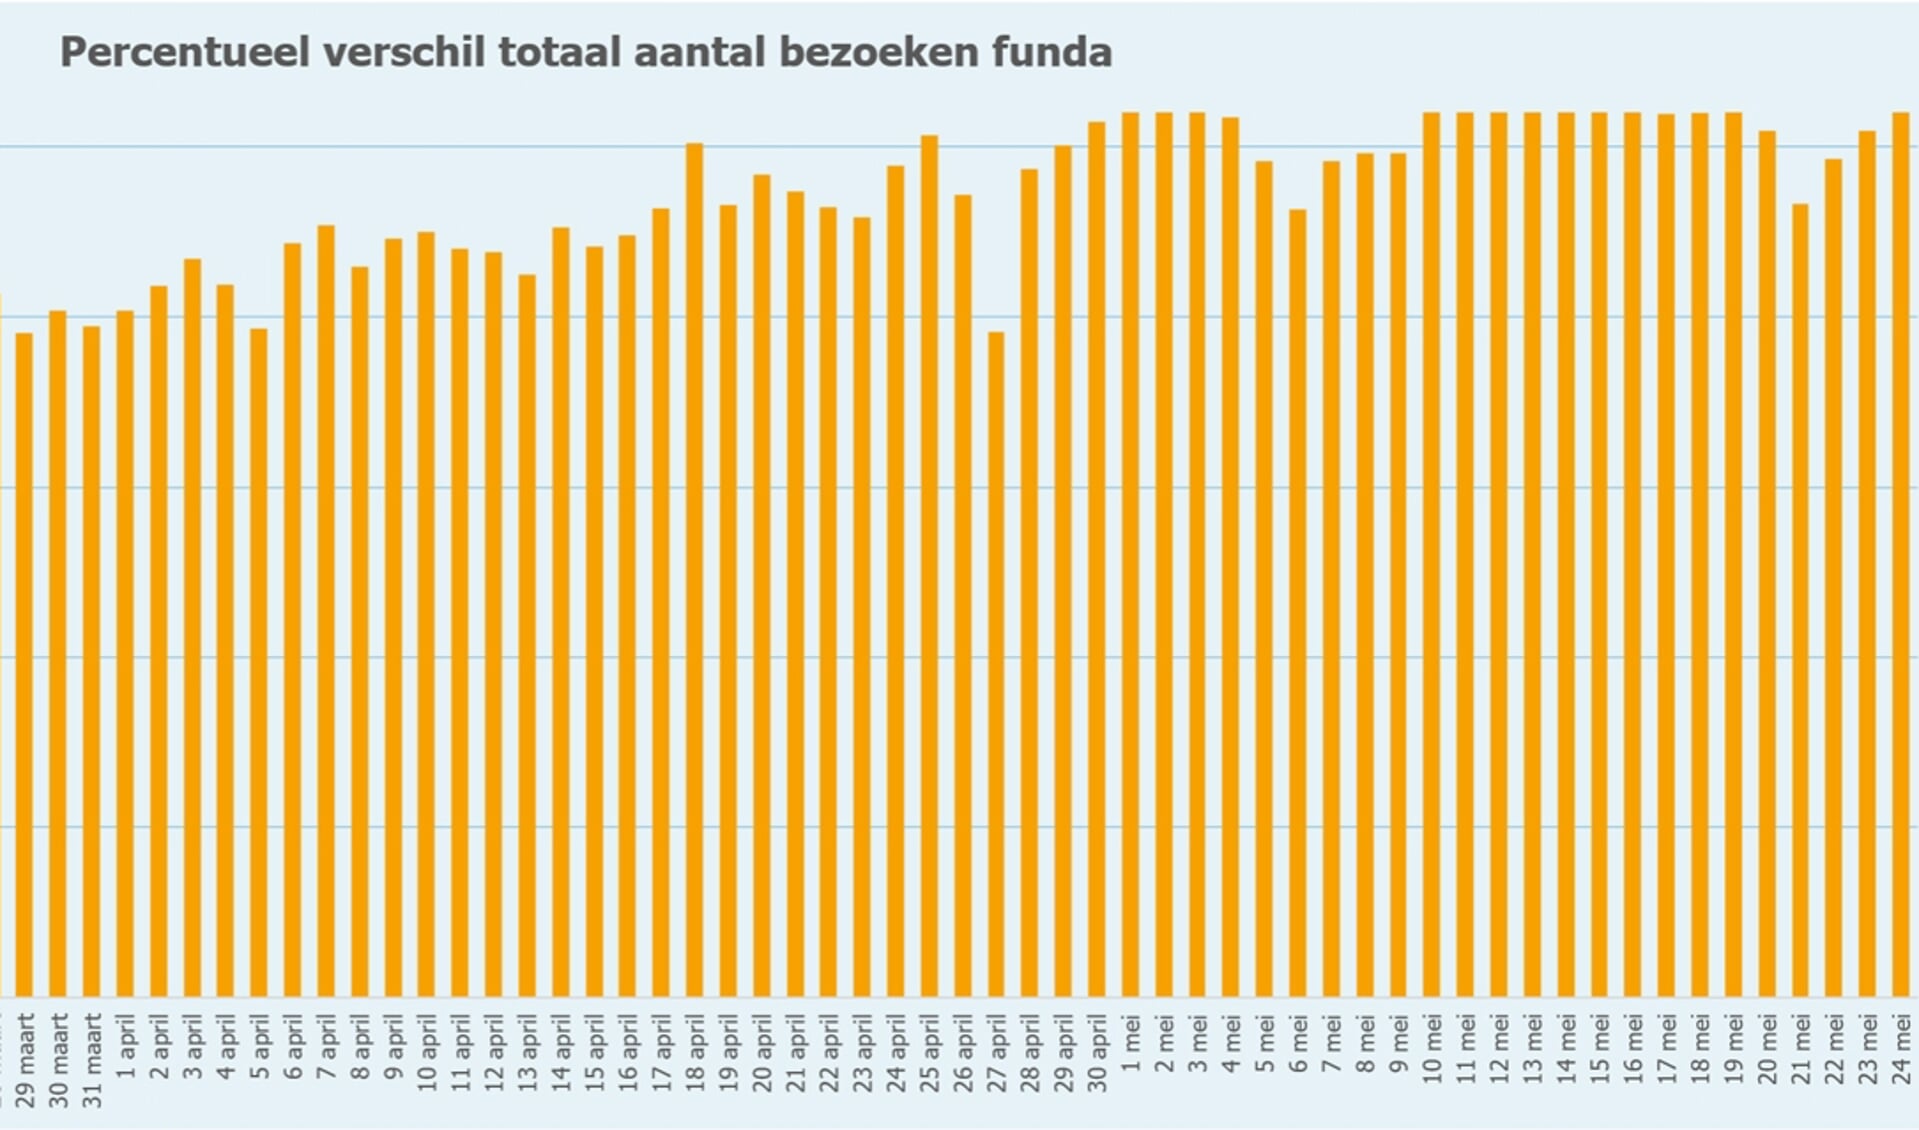 Deze grafiek laat de bezoekcijfers aan Funda per dag zien, maandagen worden daarbij vergeleken met die uit reguliere weken voor de coronacrisis.